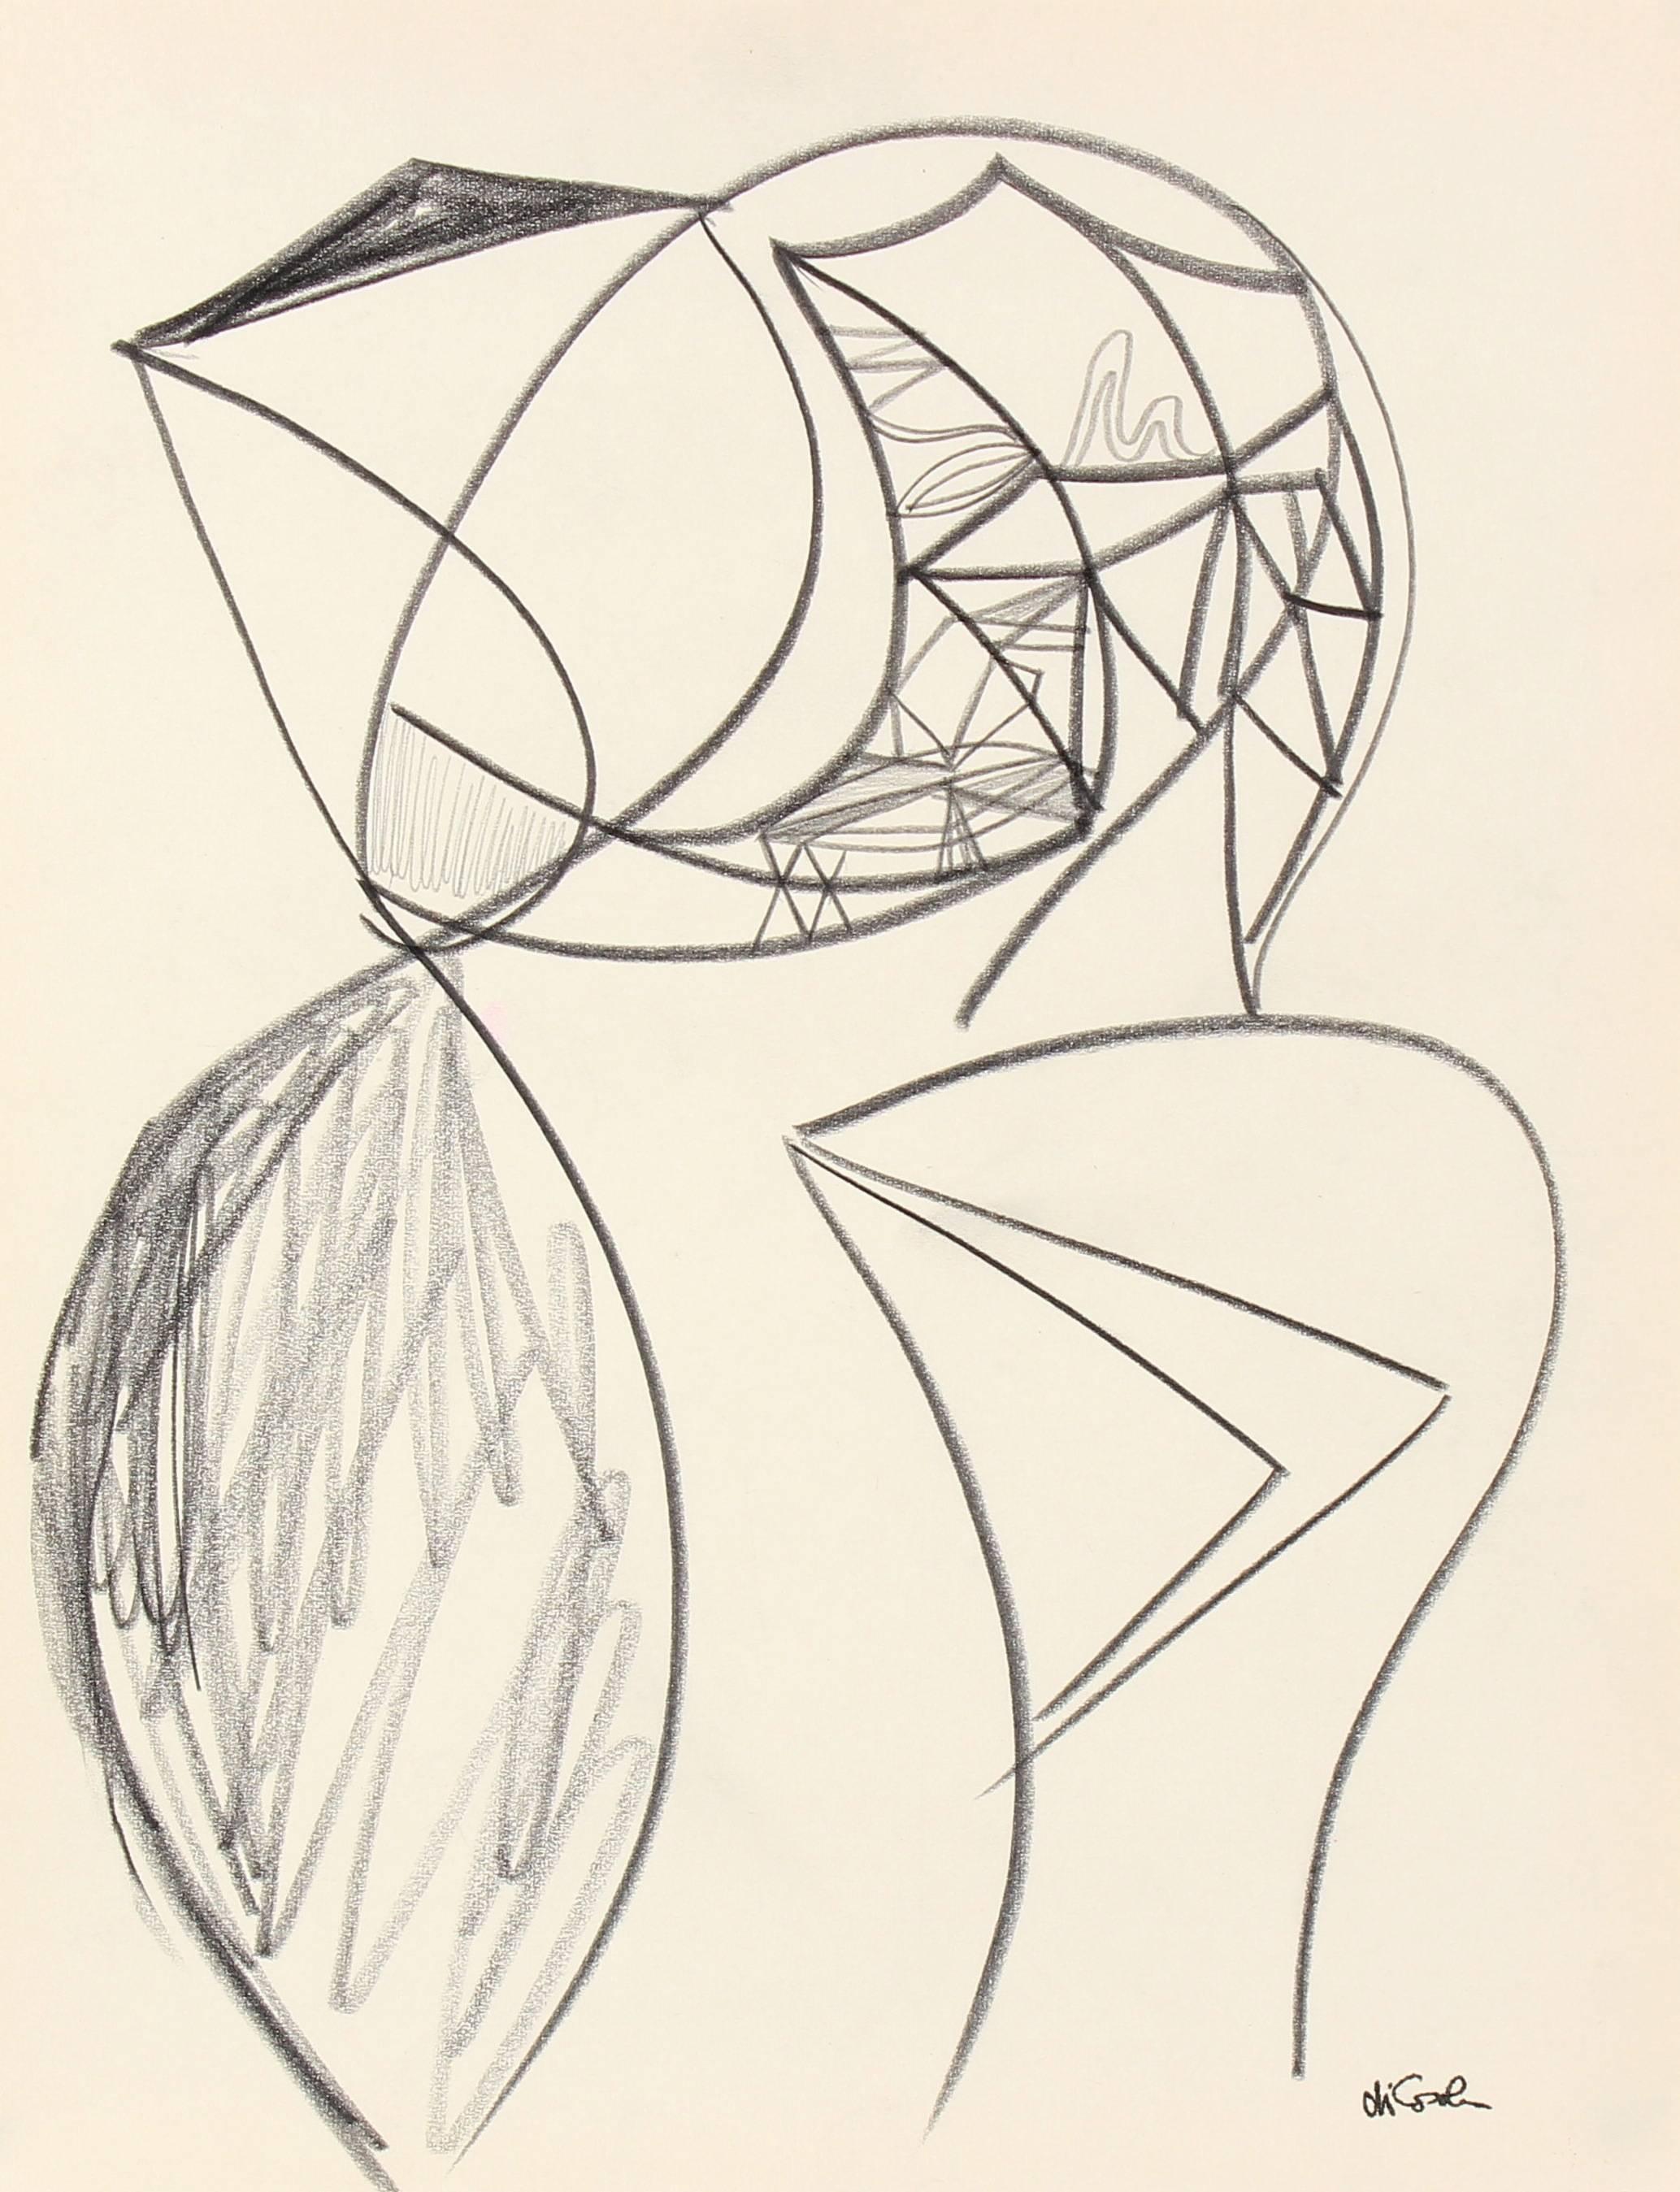 Monochromatic Surrealist Sketch in Graphite, 20th Century - Art by Michael di Cosola